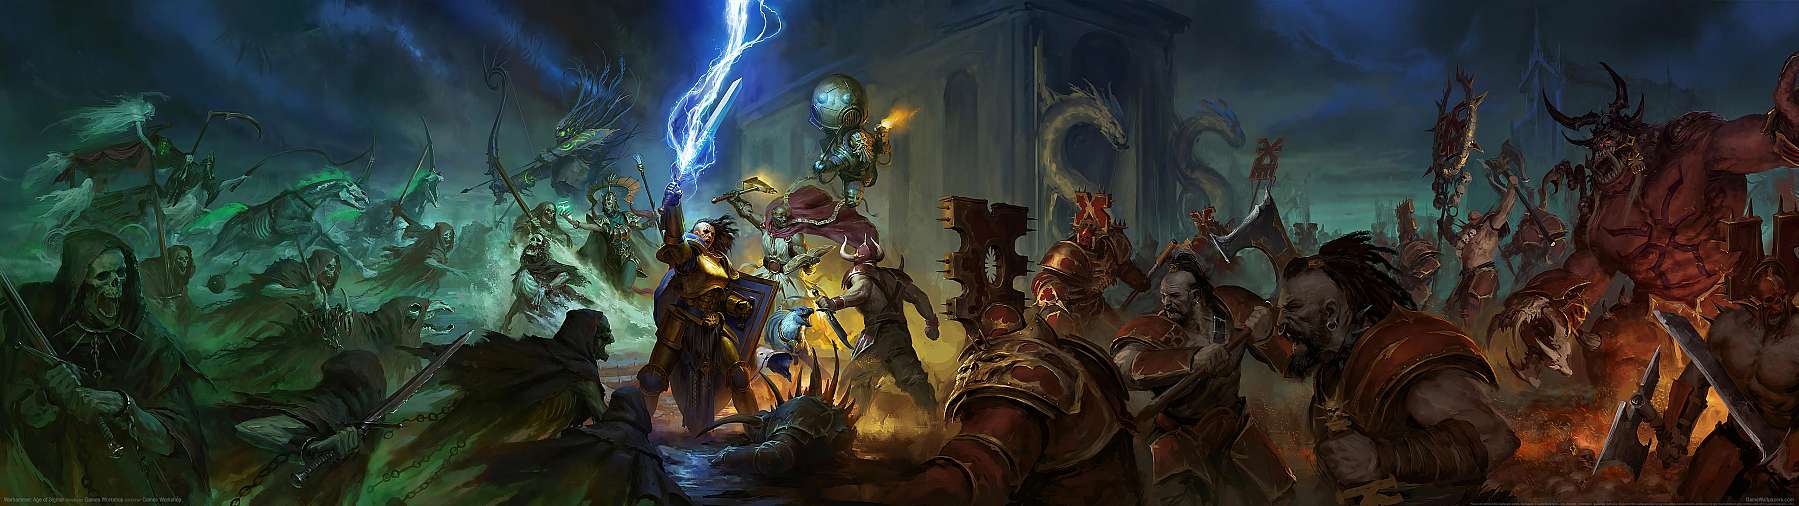 Warhammer: Age of Sigmar superwide fondo de escritorio 03